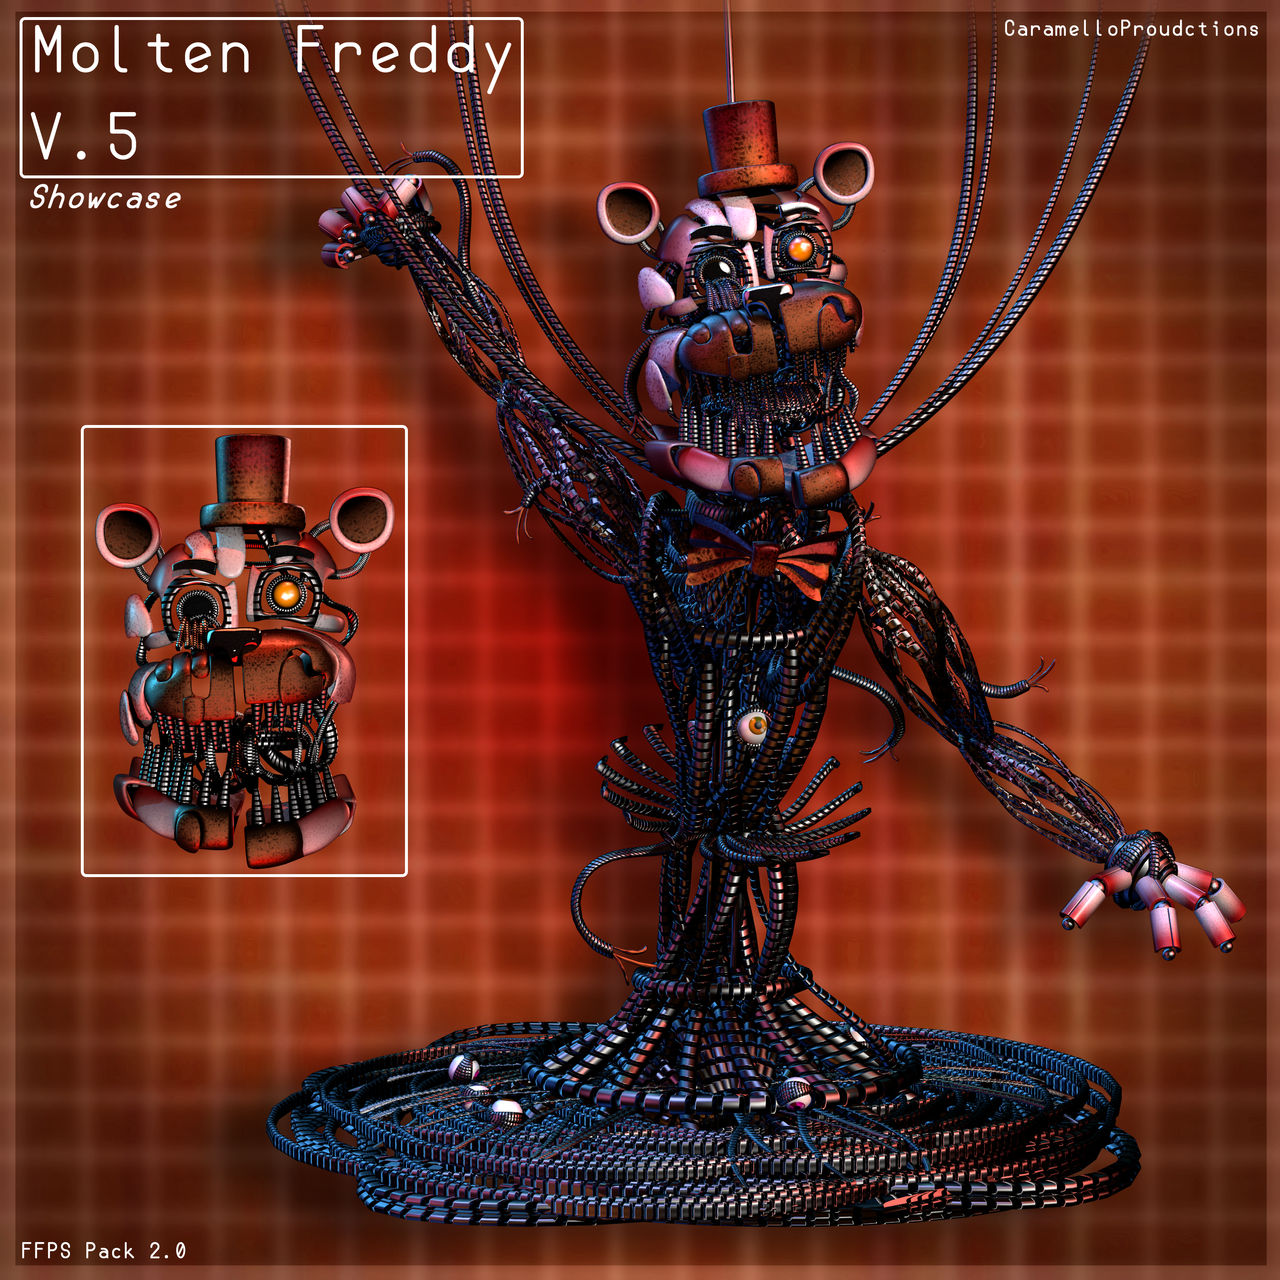 Molten-freddy - Download Free 3D model by fnaflova (@fnaflova